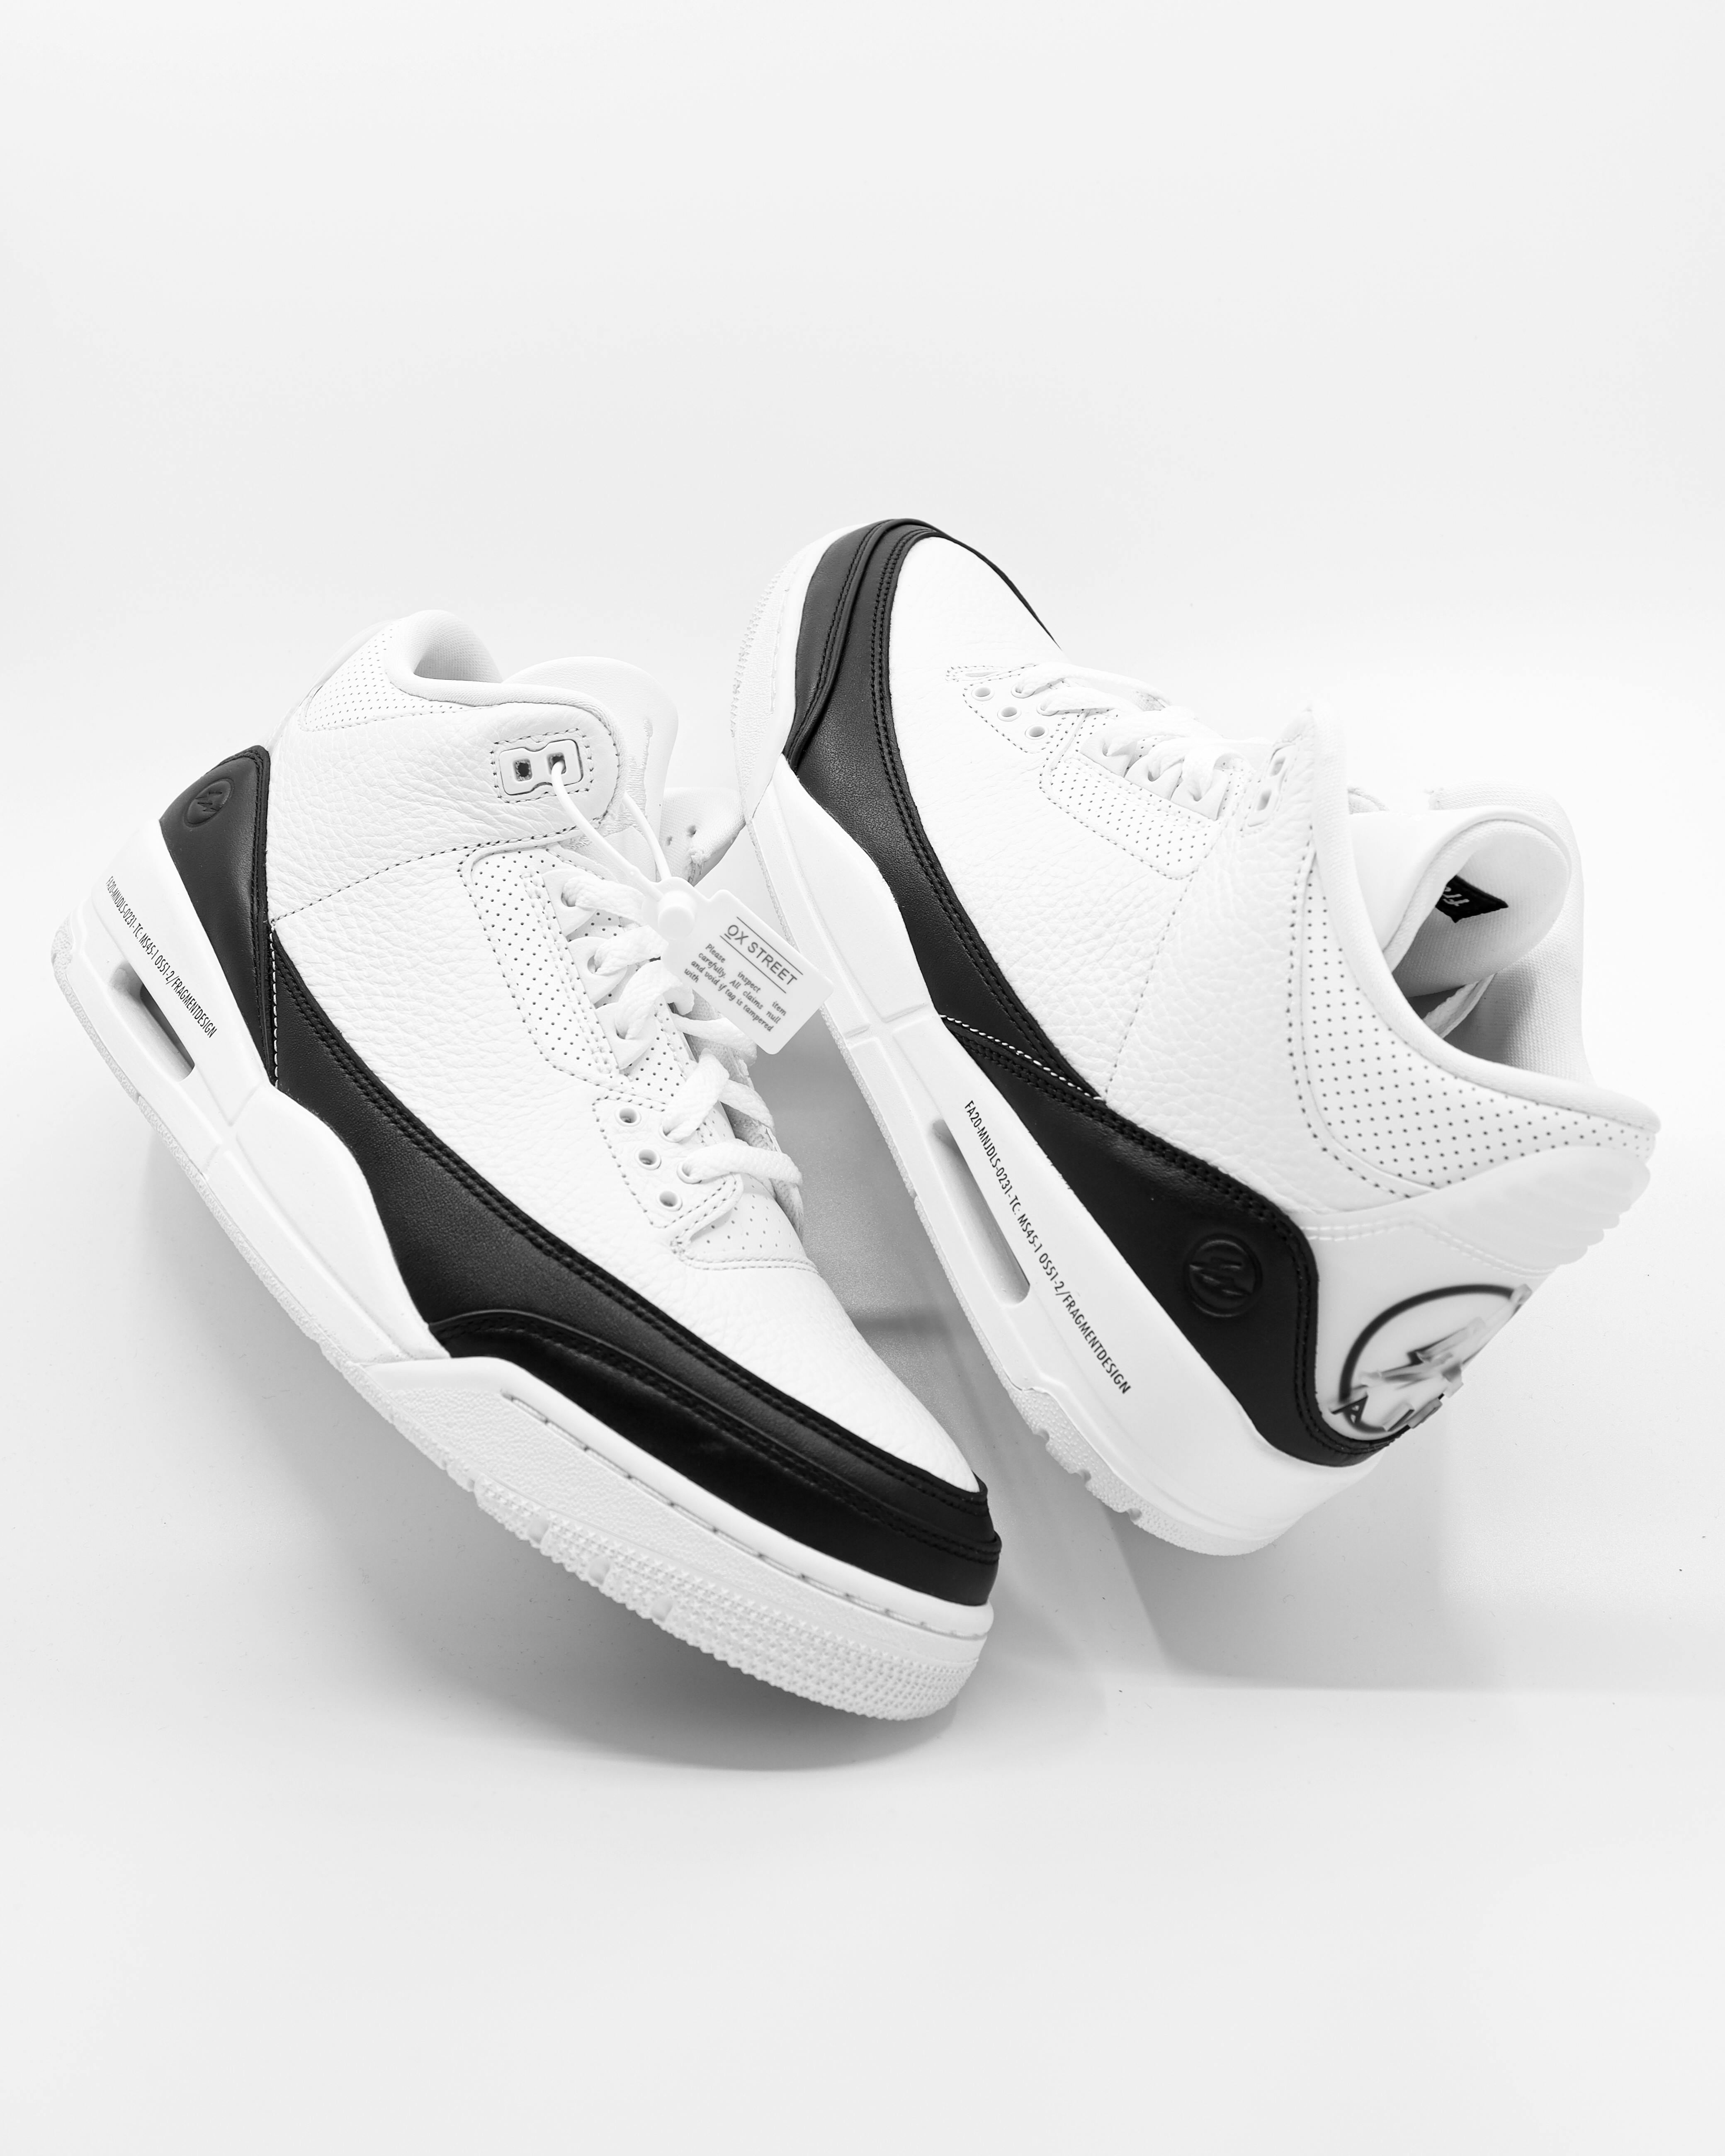 10+ Zapatos Jordan Blanco Fotografías de stock, fotos e imágenes libres de  derechos - iStock